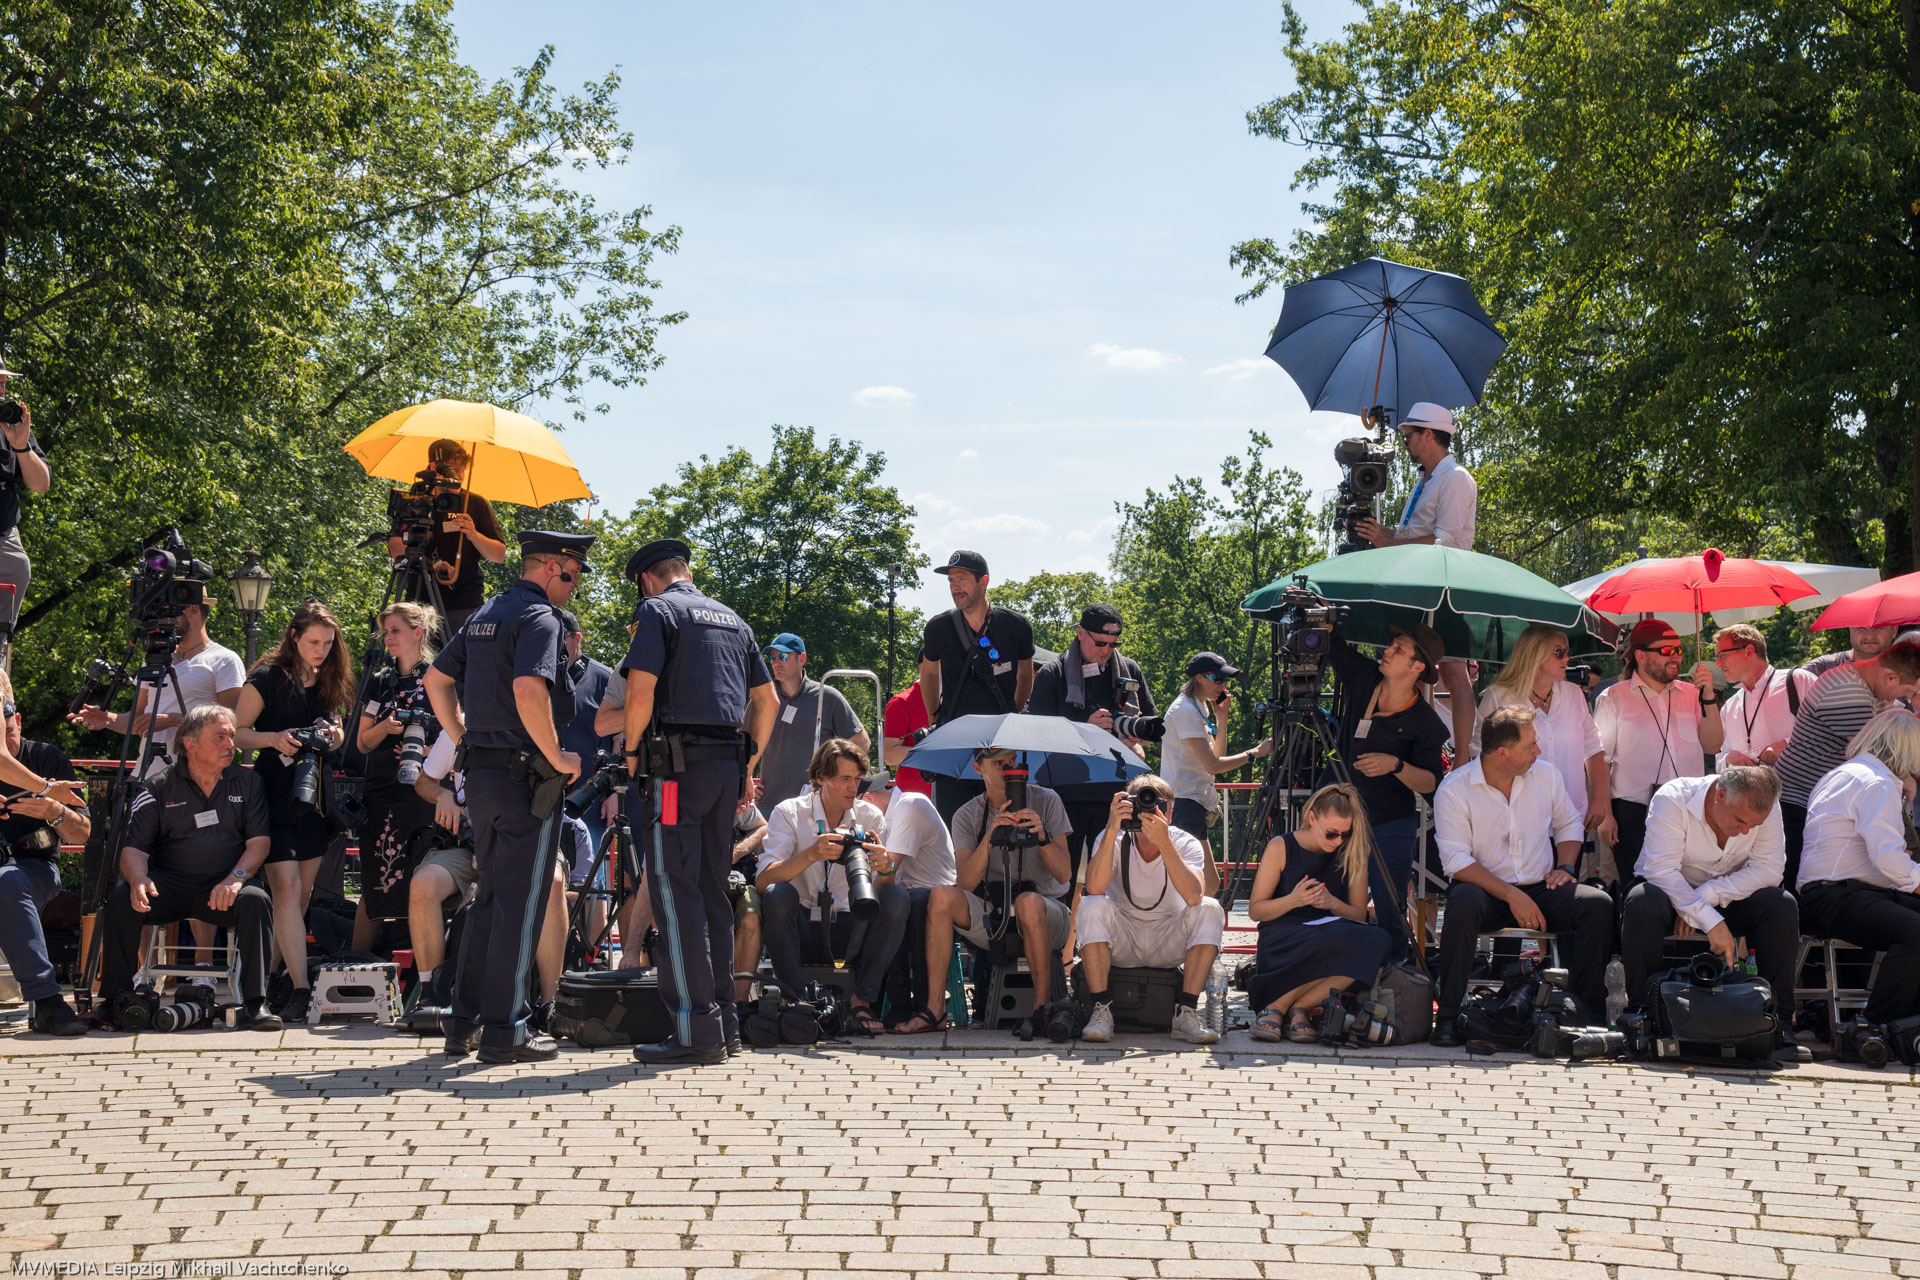 Фото и видео журналисты род палящим солнцем Баварии в ожидании знаменитых гостей